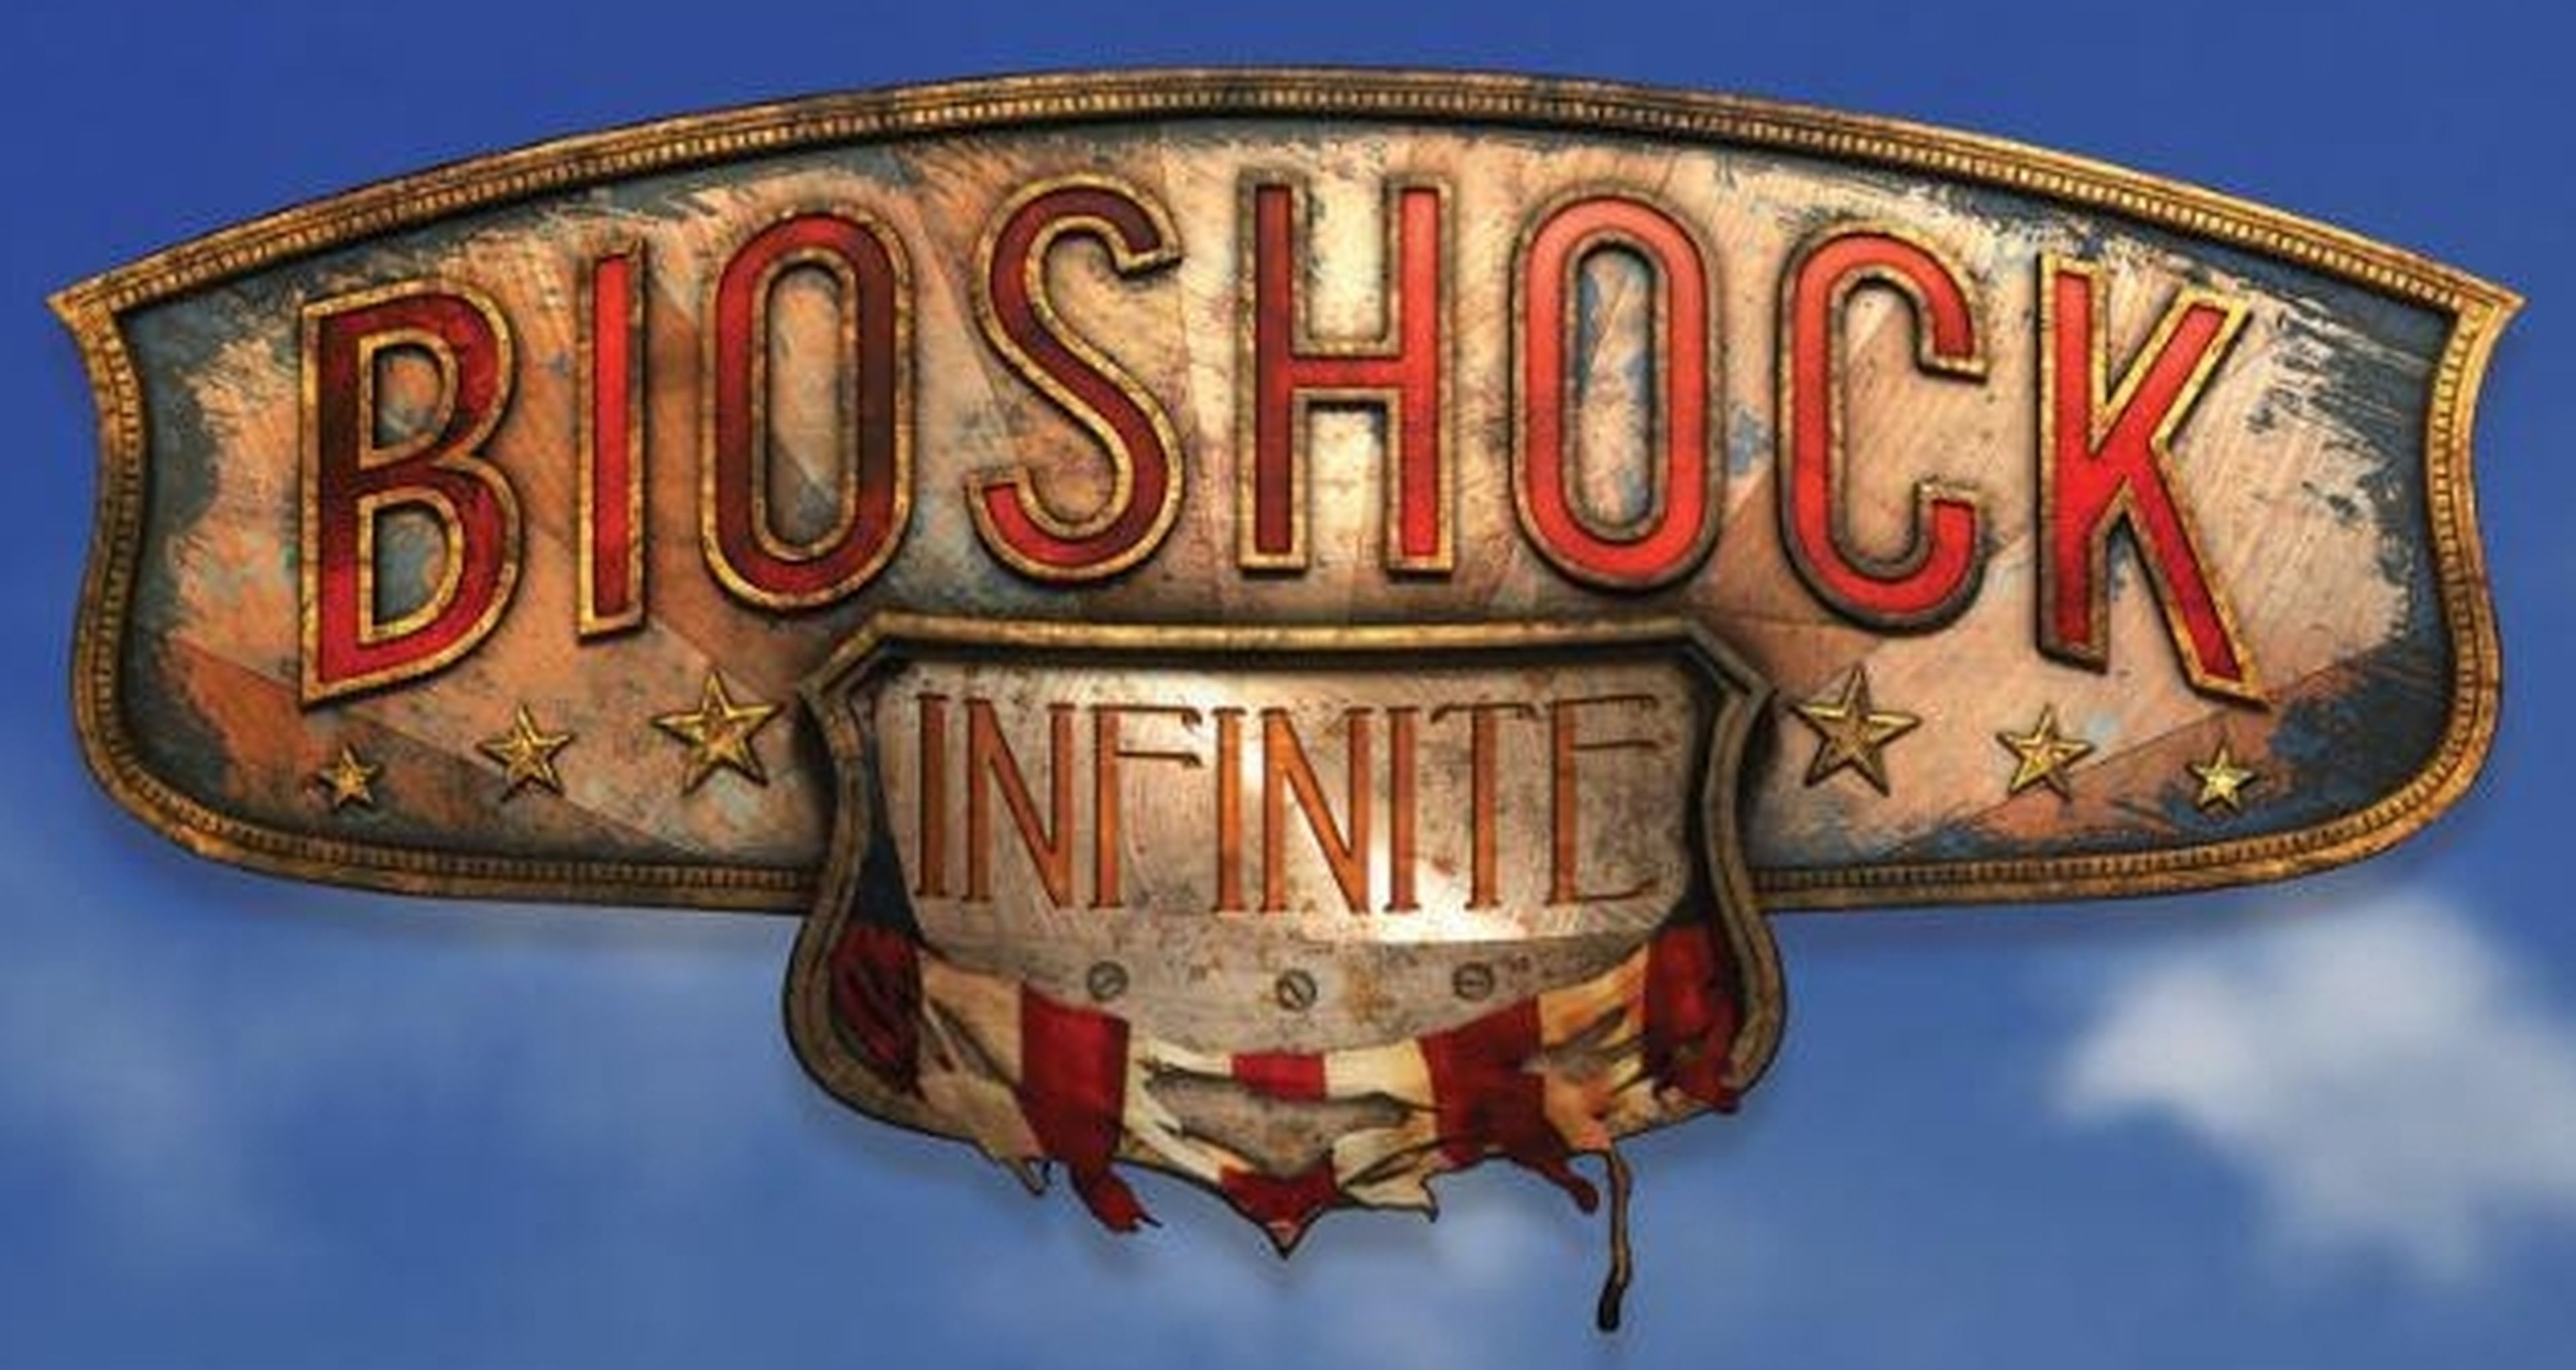 Más de Bioshock Infinite en diez días